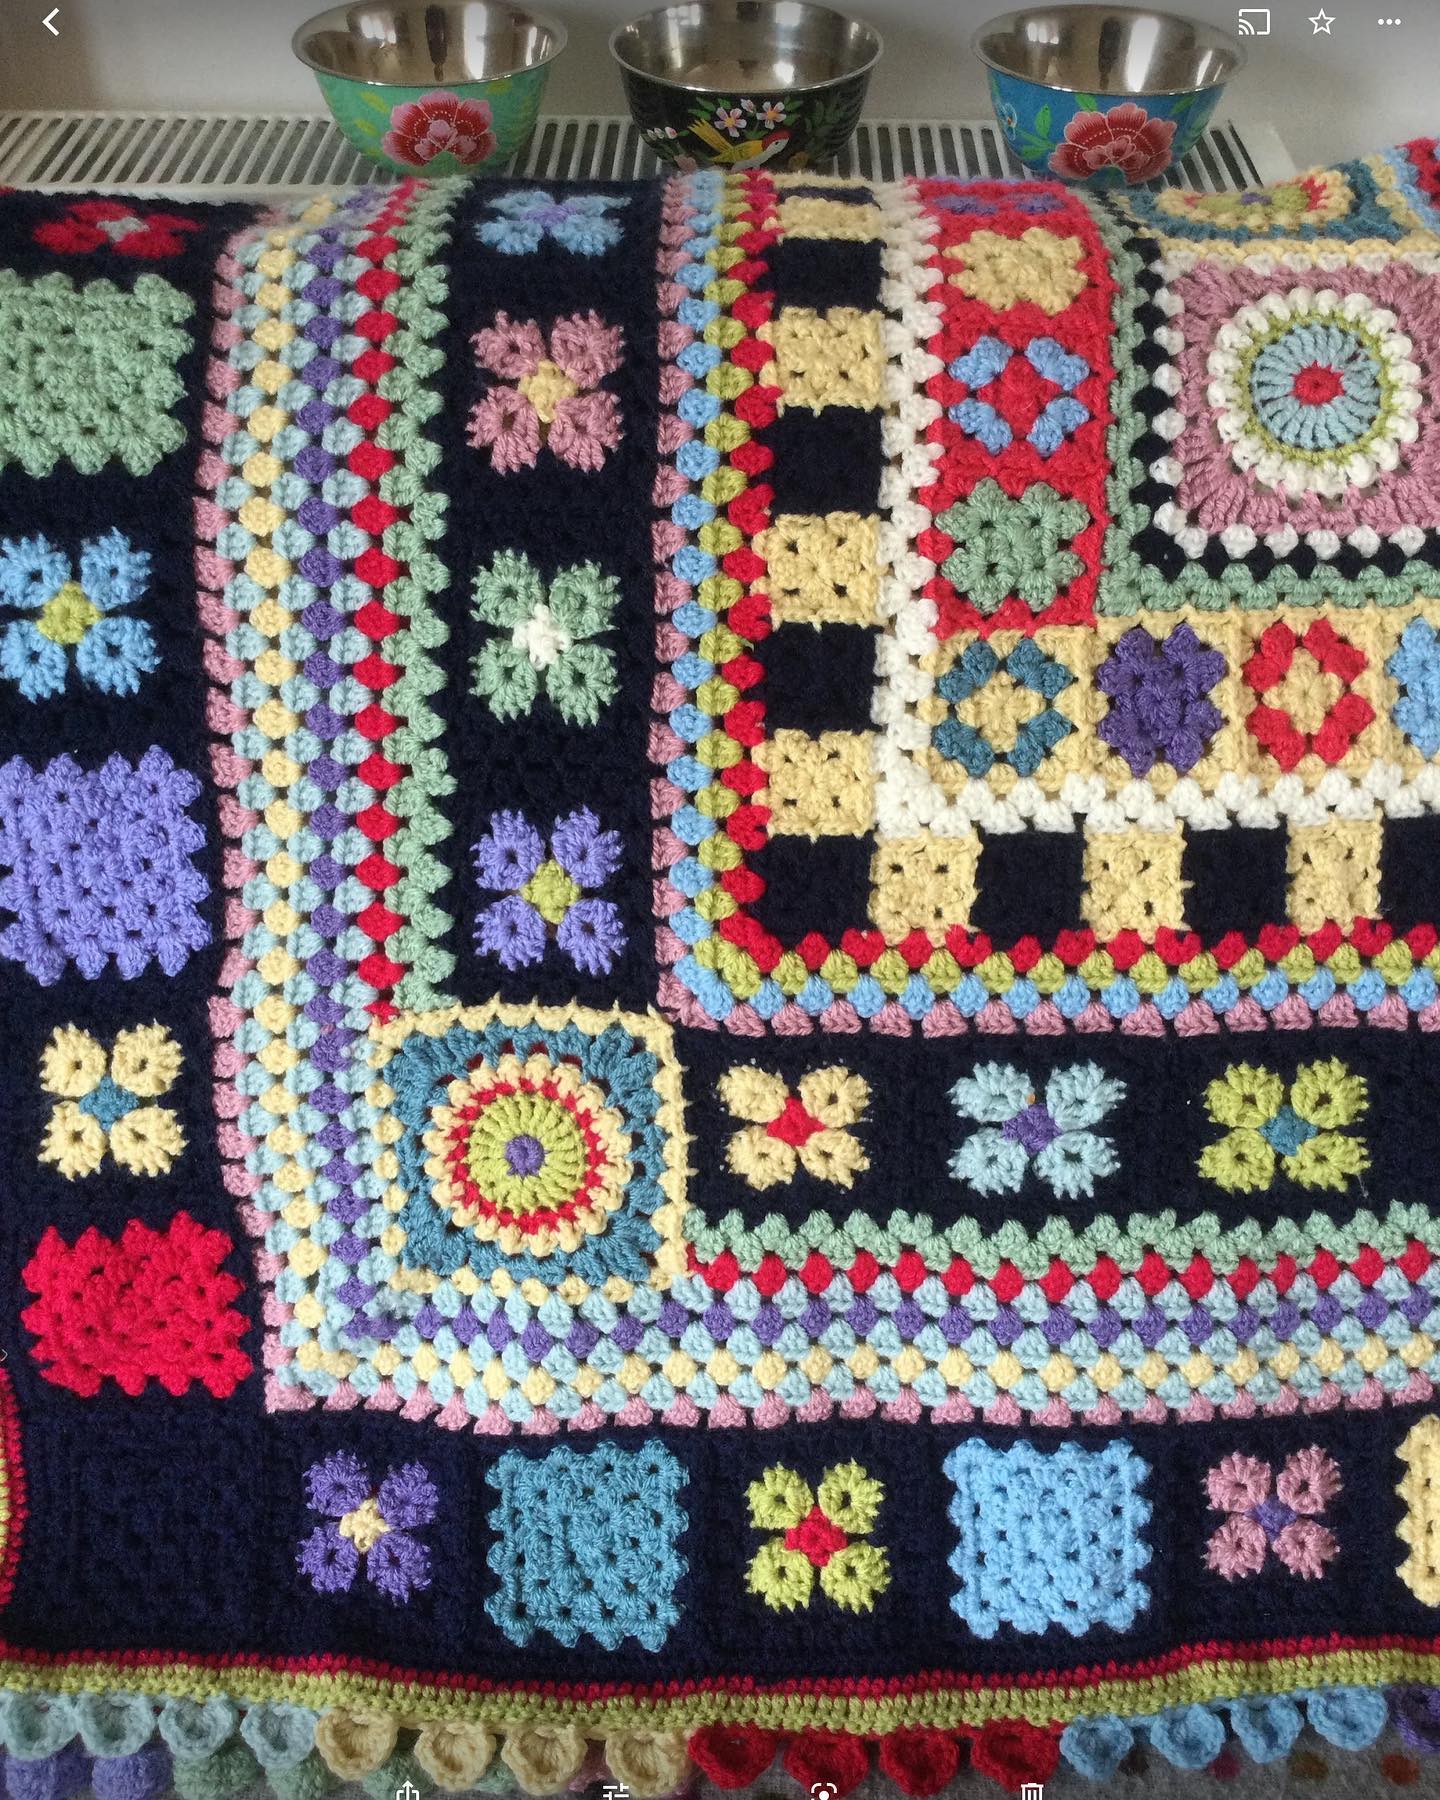 Narrow Boat Crochet Blanket Yarn Pack by Woolthreadpaint